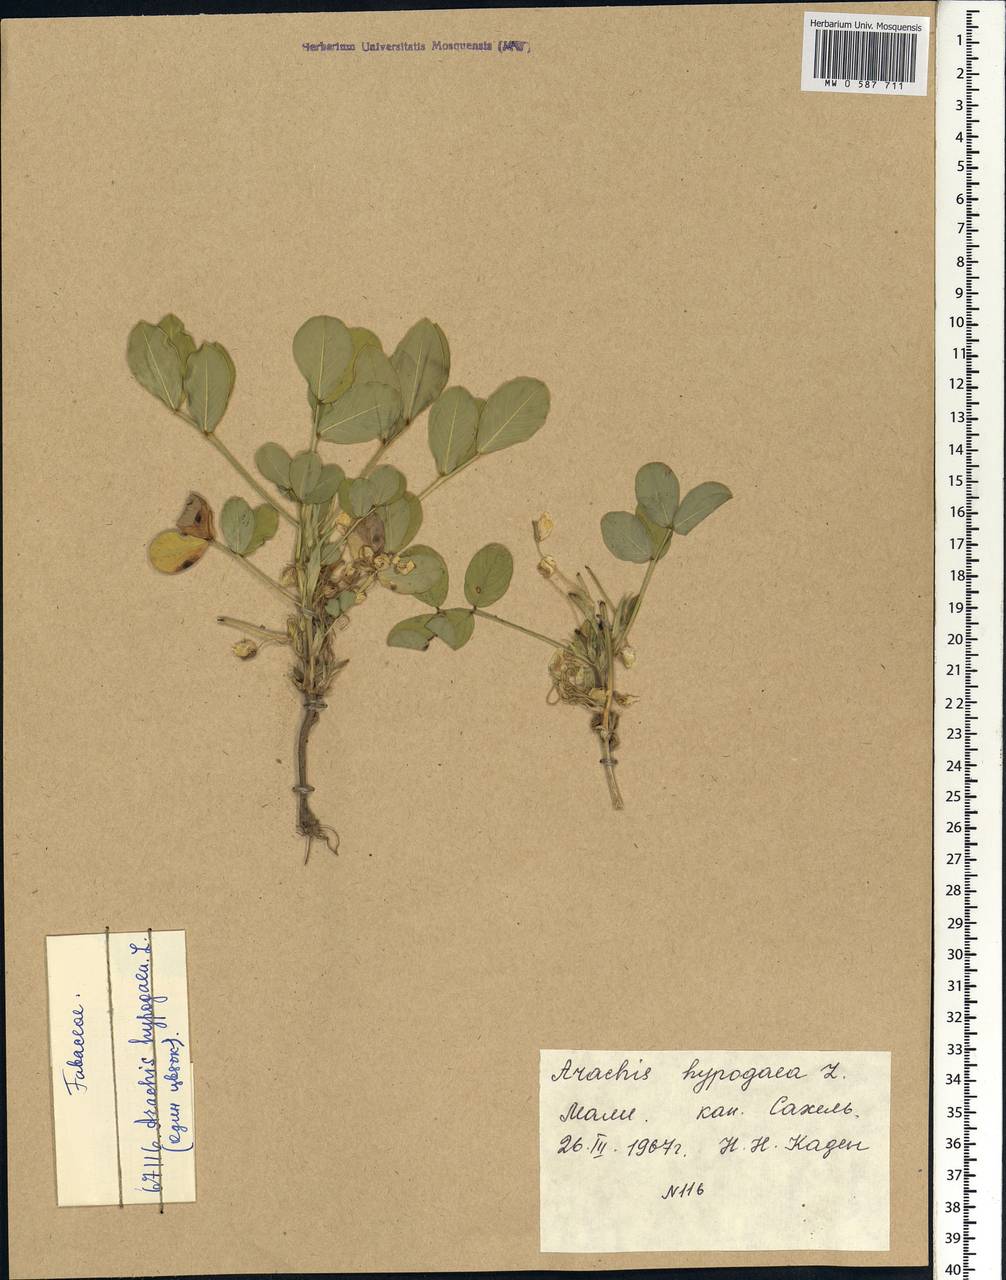 Arachis hypogaea L., Africa (AFR) (Mali)